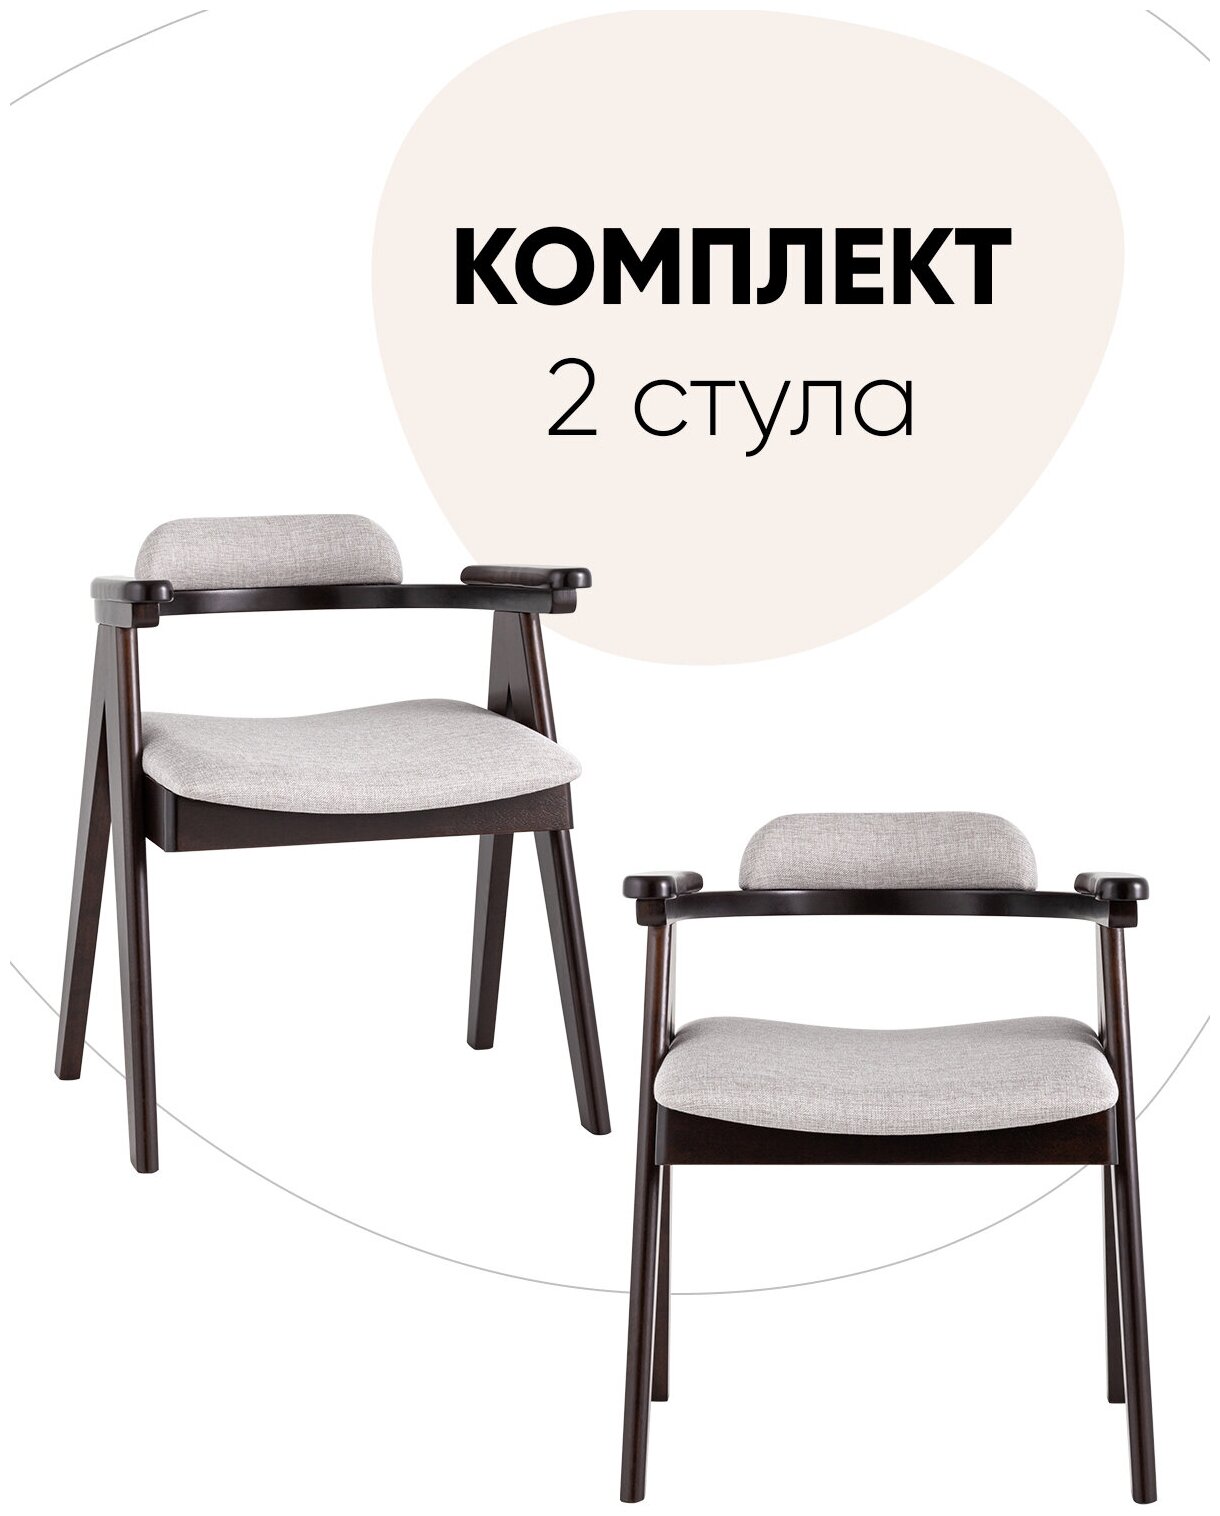 Комплект обеденных стульев 2 шт OLAV, массив гевеи (эспрессо), мягкое сидение, светло-серое